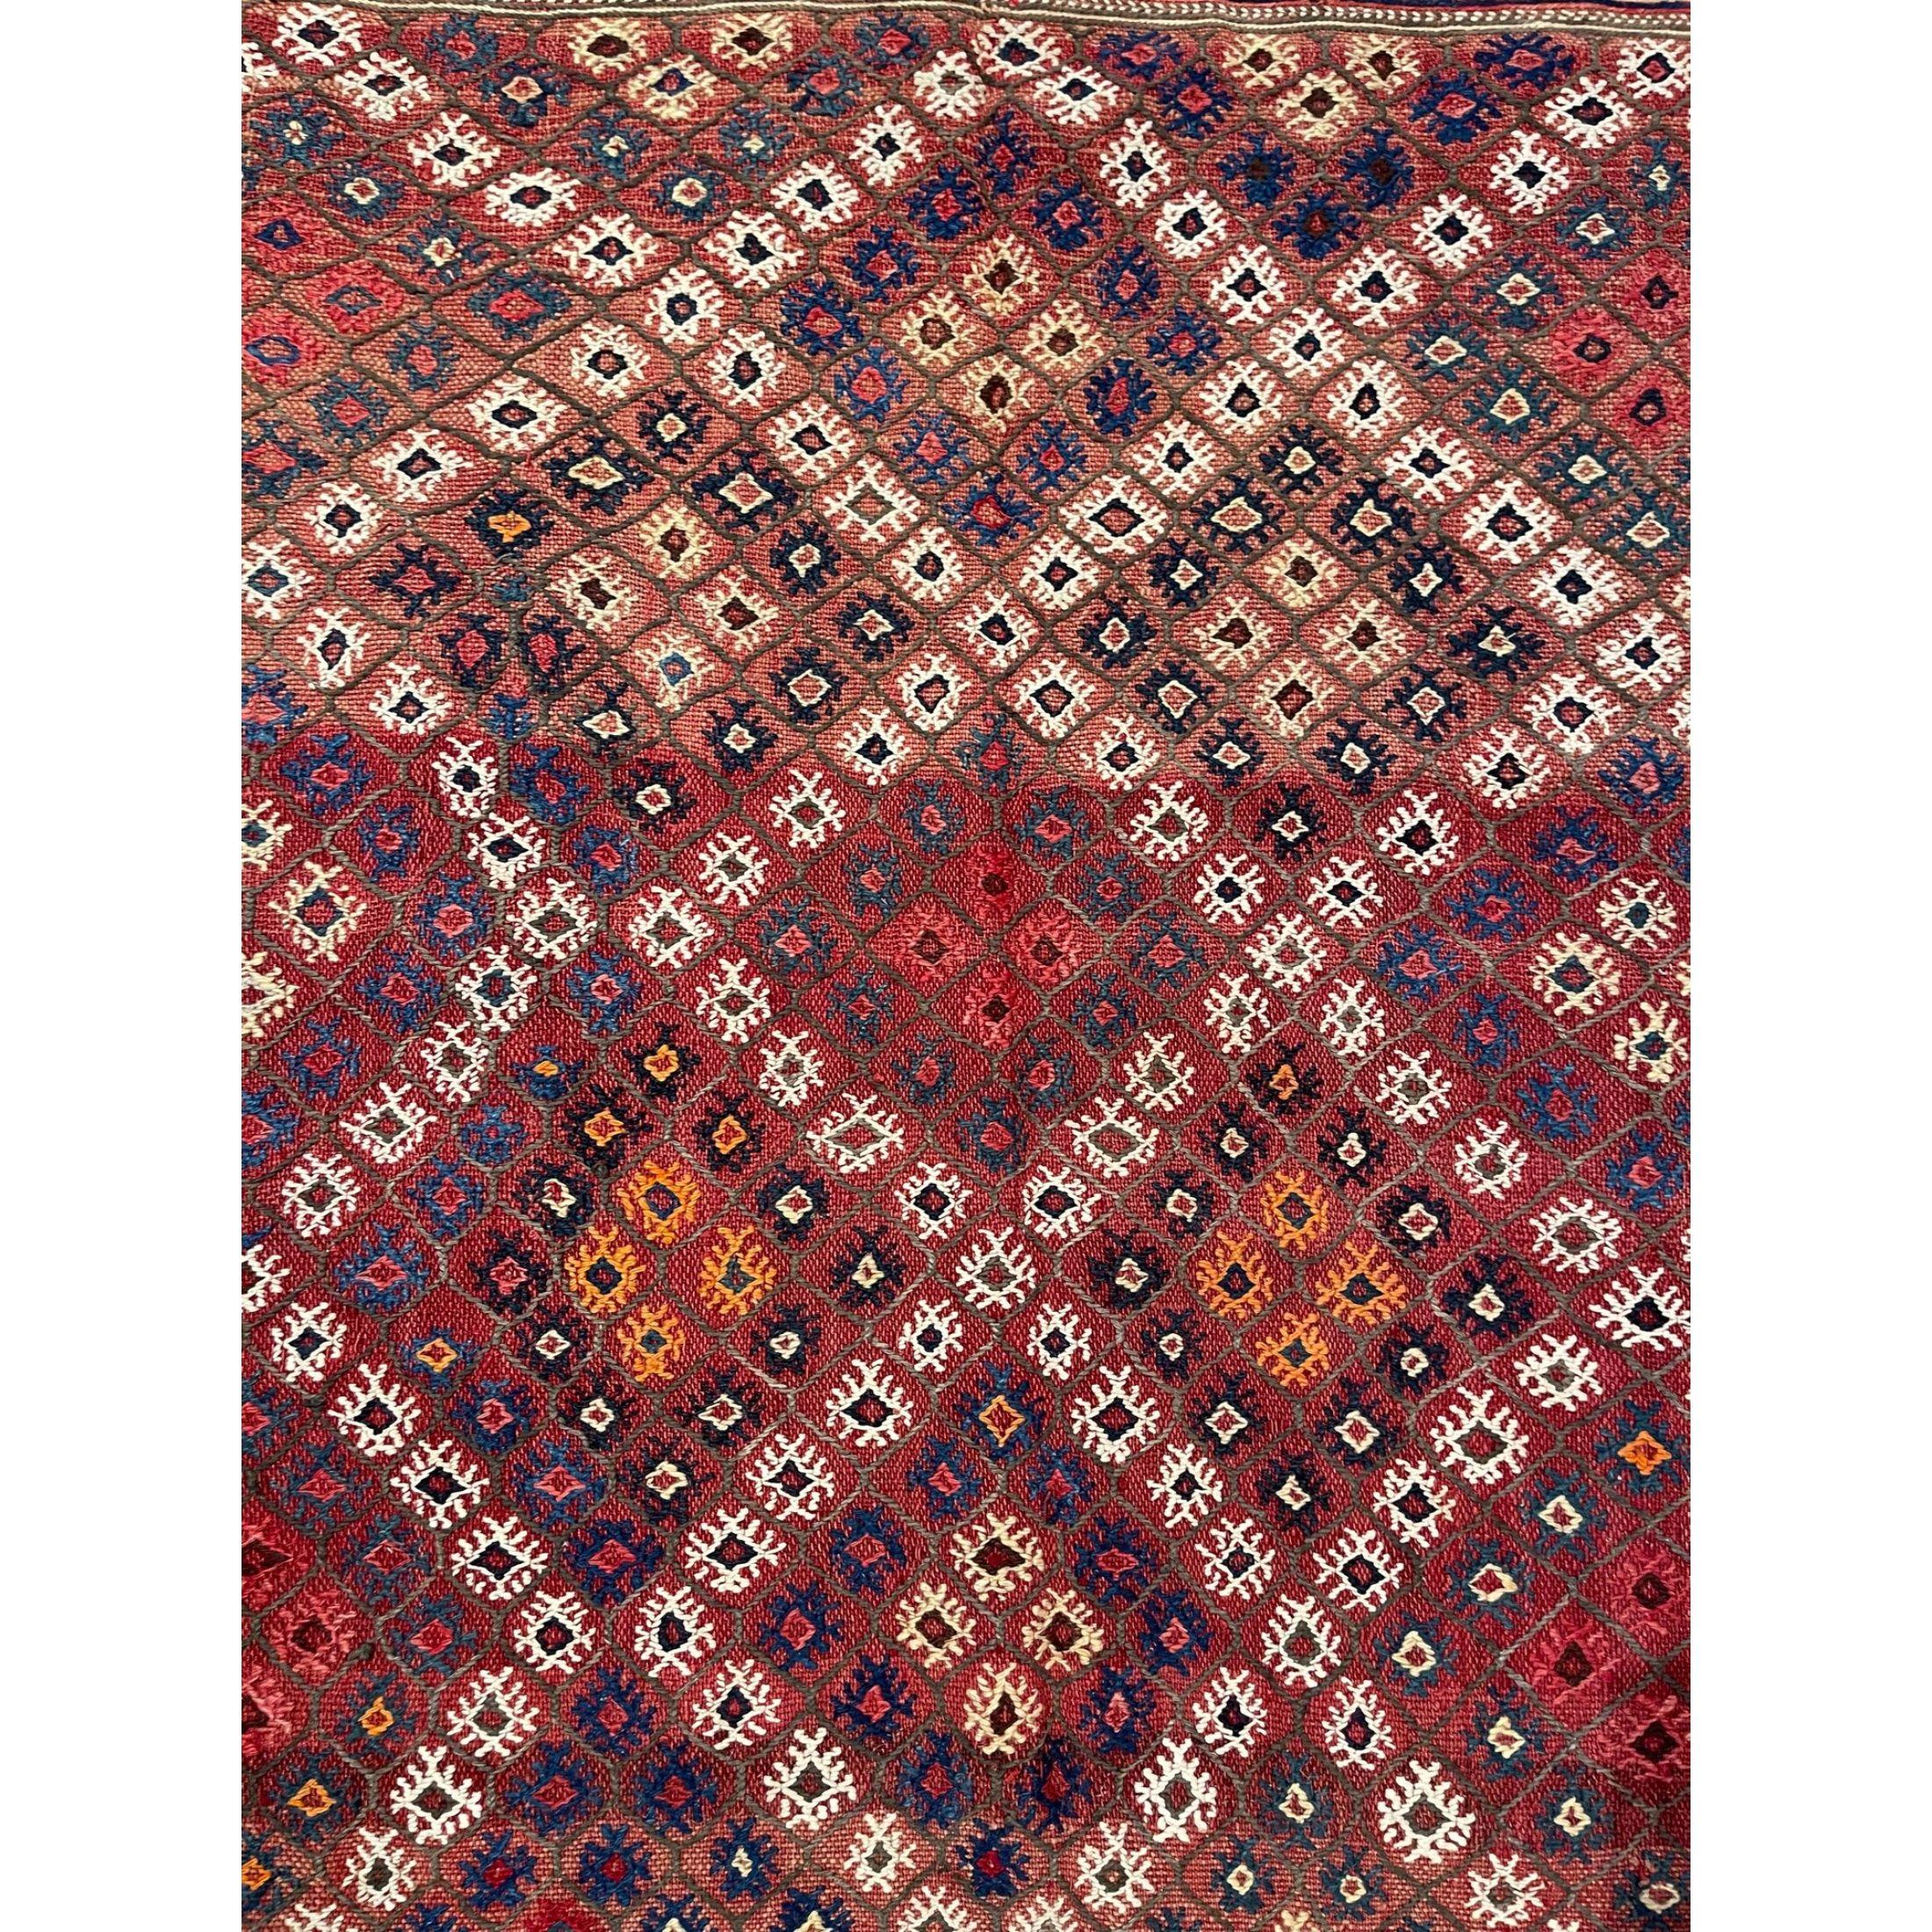 Tapis nomades anciens :

- Pour la plupart des gens, le concept de tapis d'extérieur, en particulier le tapis à poils longs, est pratiquement synonyme d'Orient, surtout de Perse et de Turquie. Les revêtements de sol à tissage plat, qu'il s'agisse